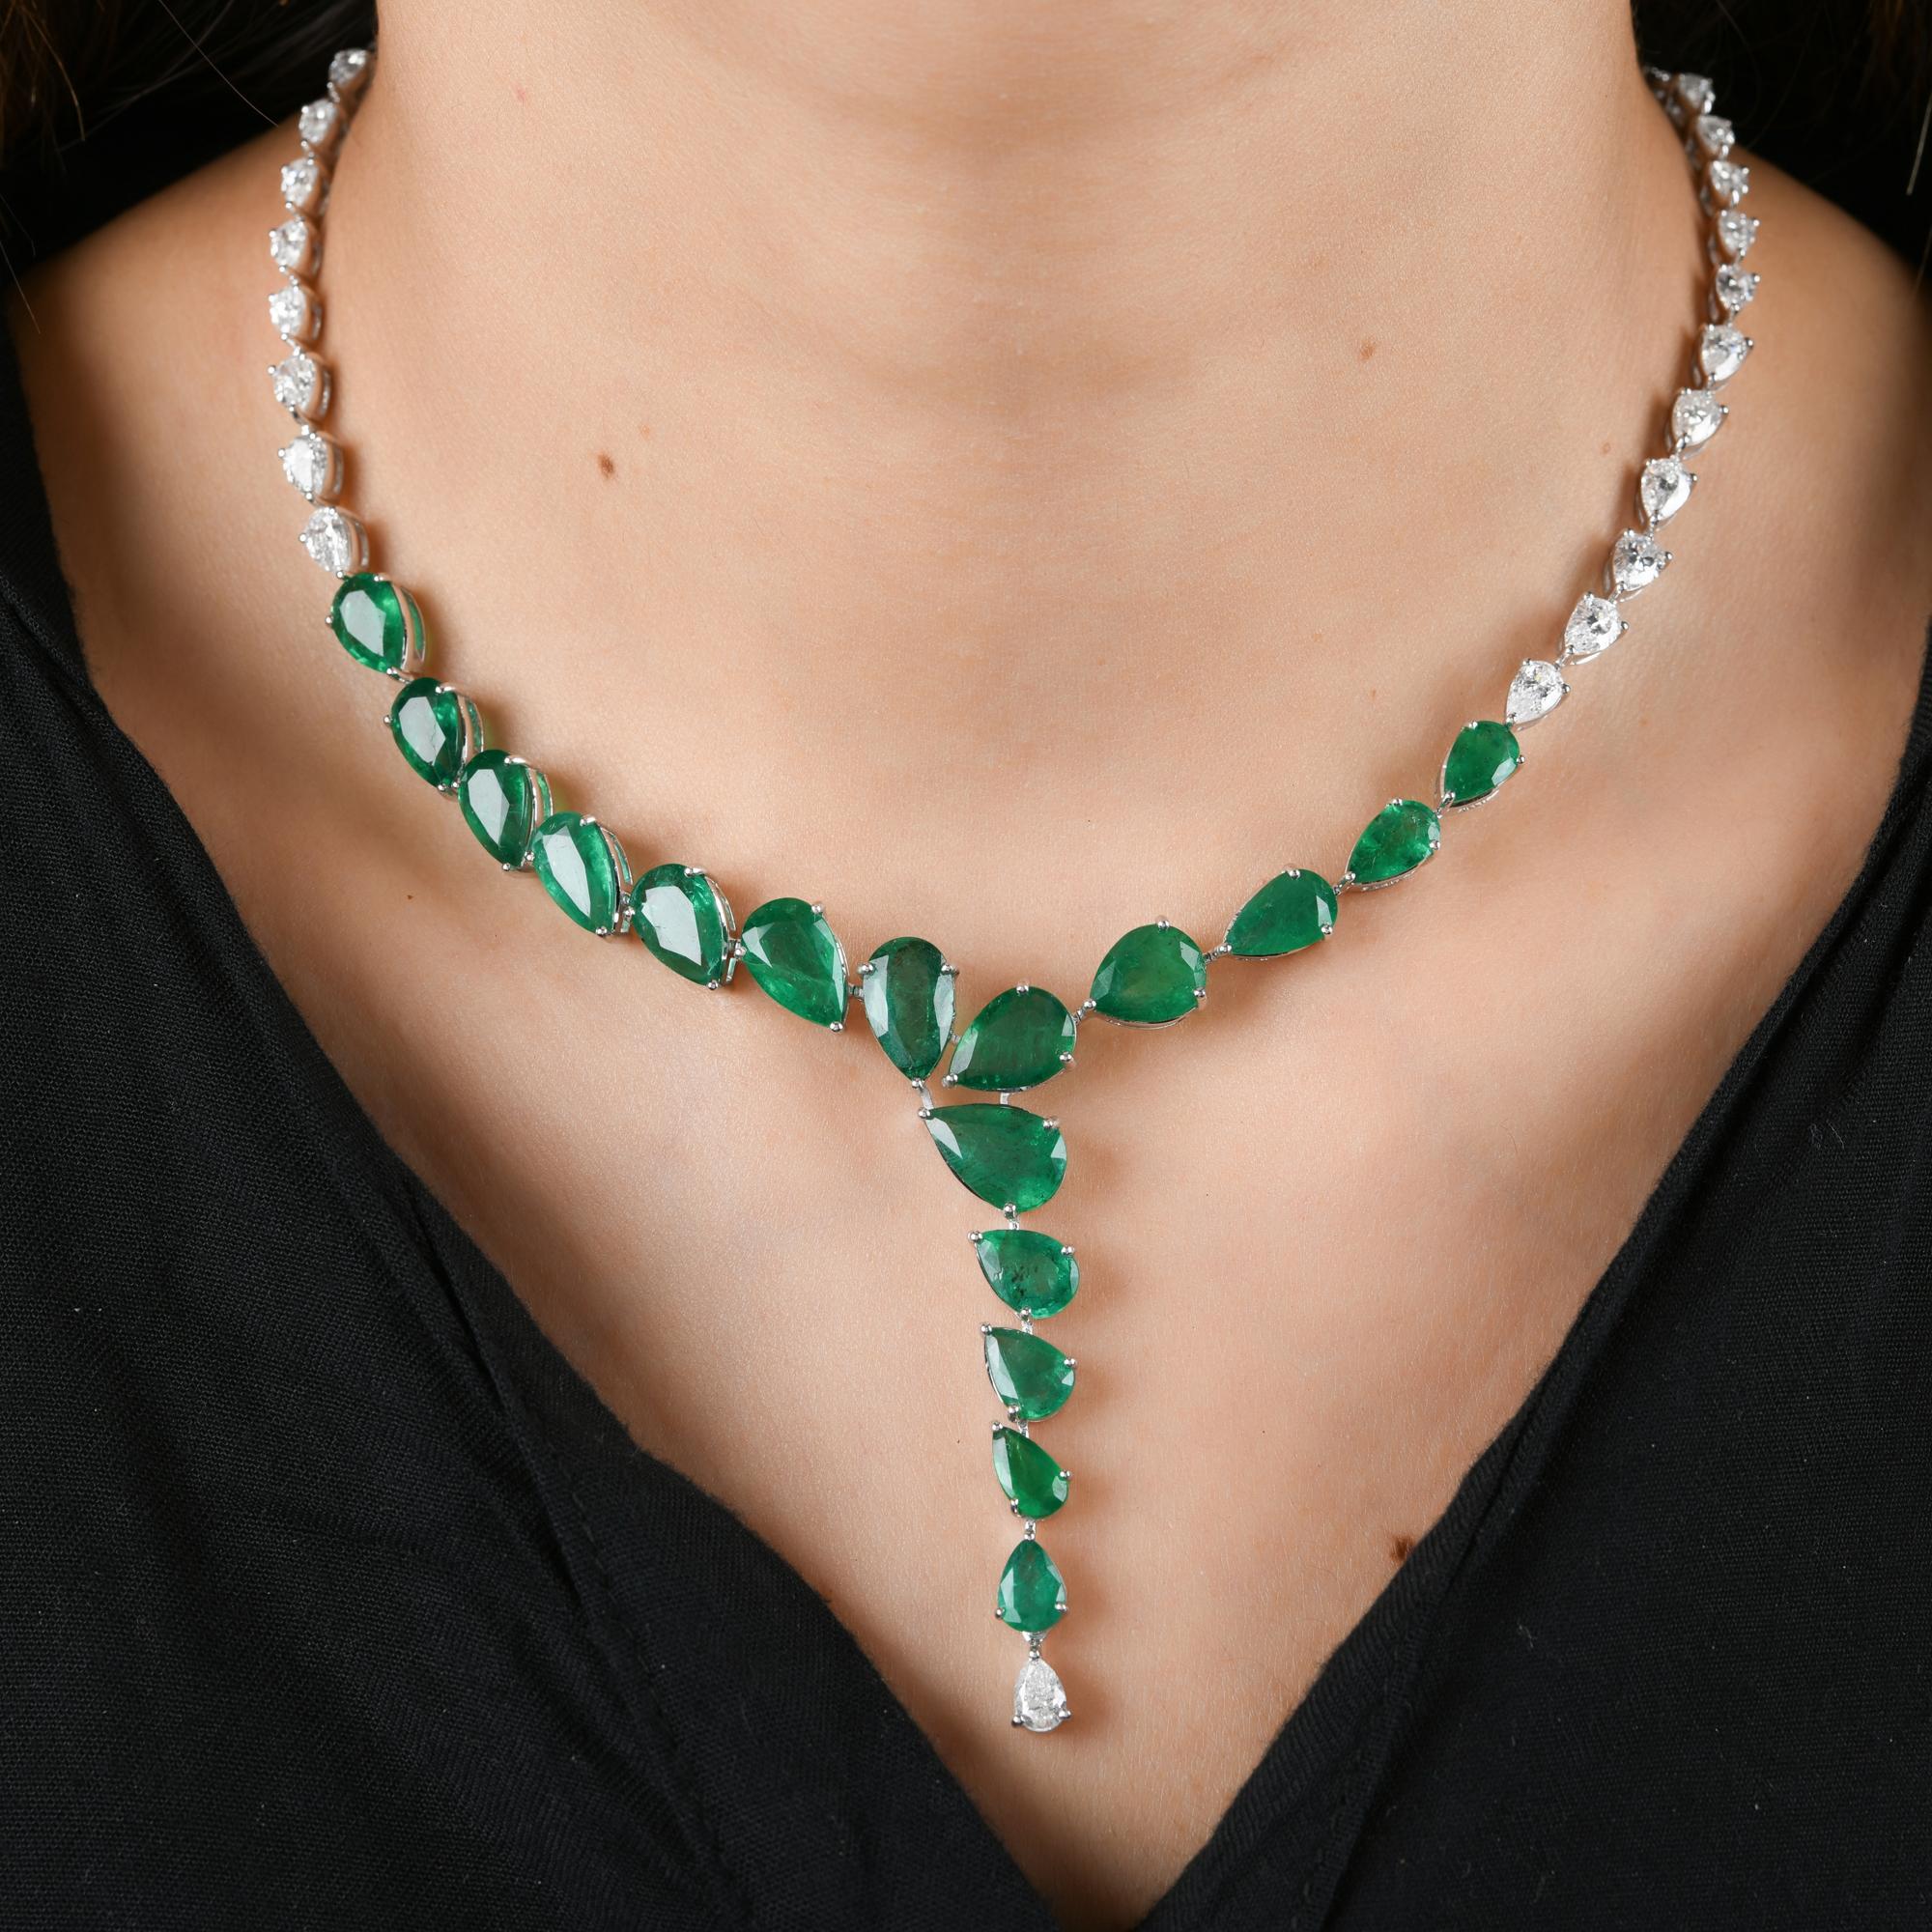 zambian emerald jewelry